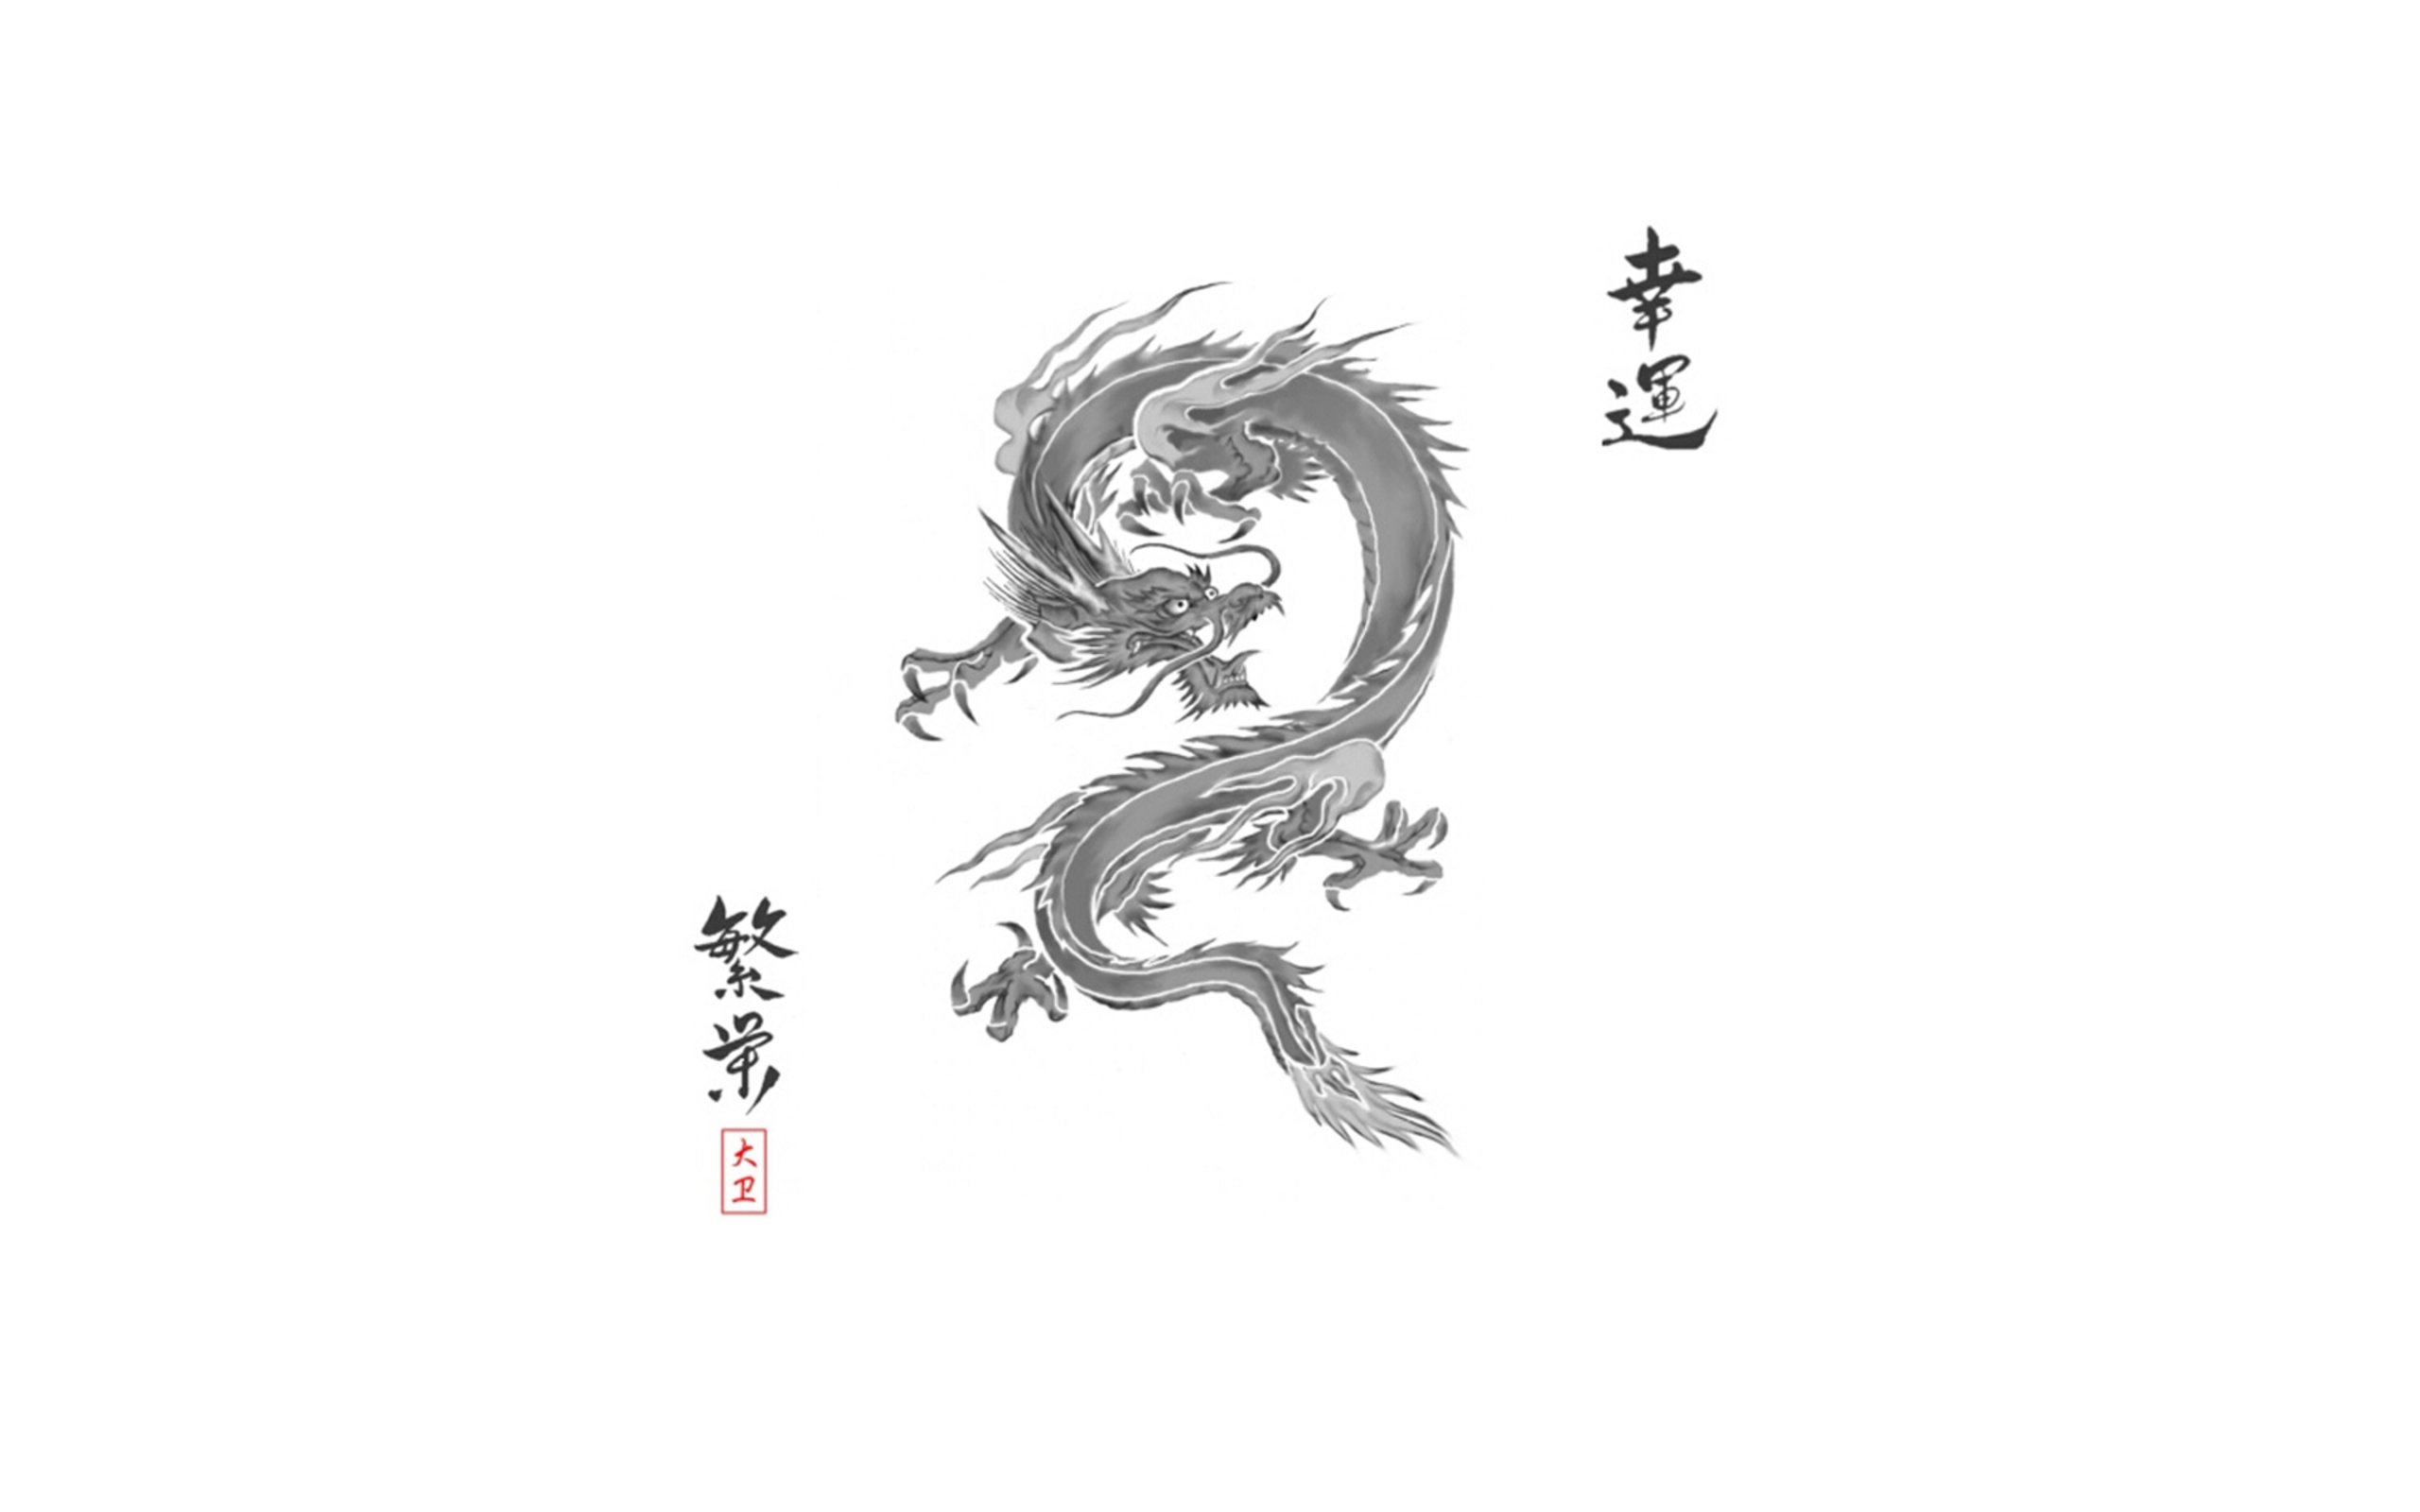 Dark Chinese Dragon Aesthetic